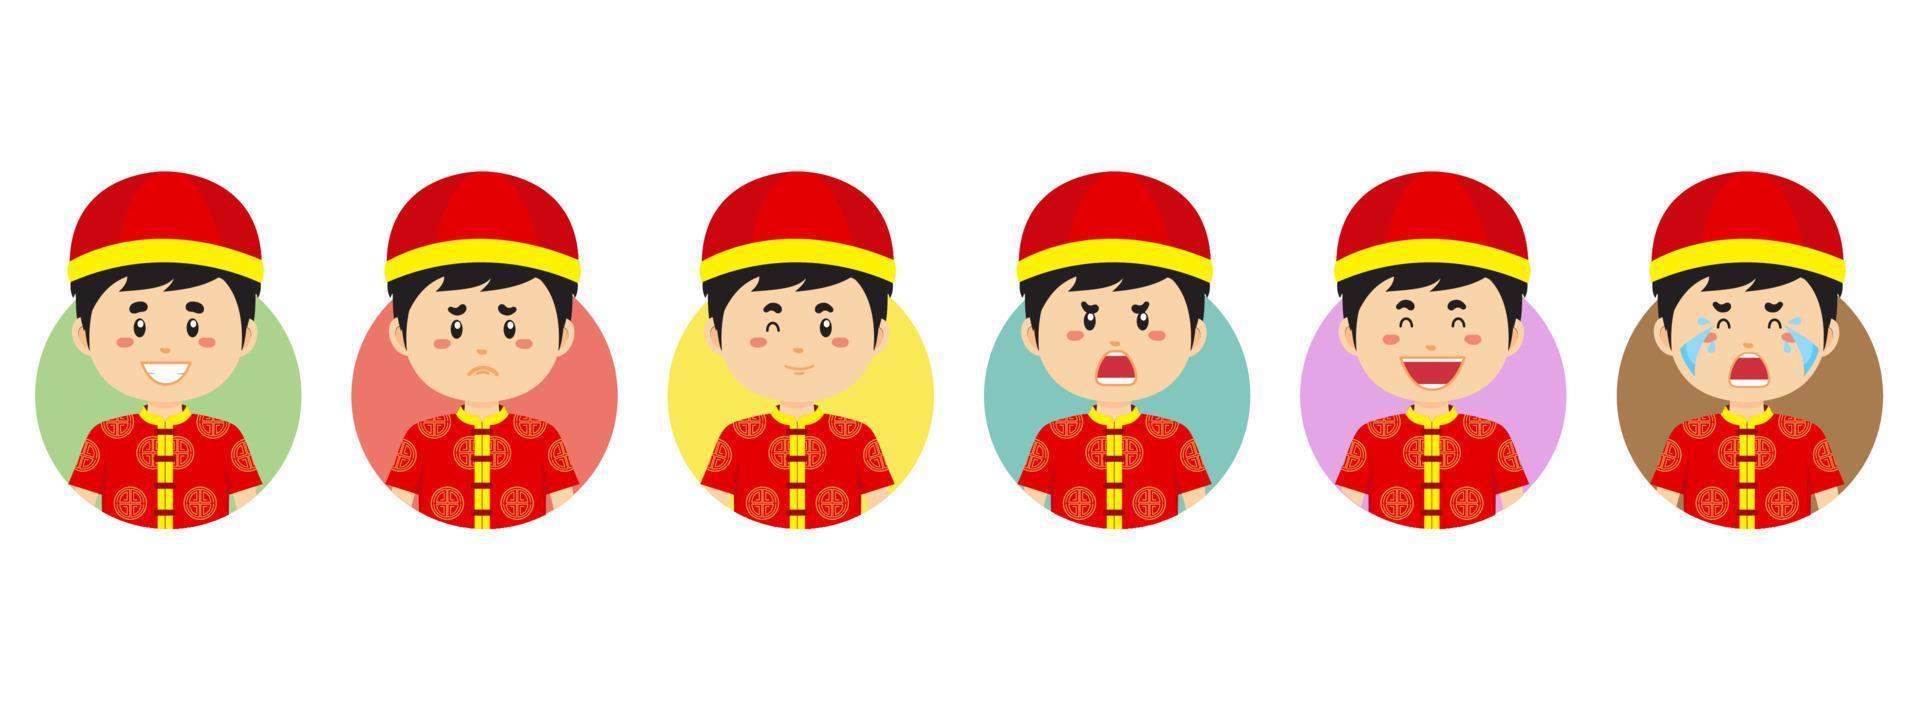 kinesisk avatar med olika uttryck vektor